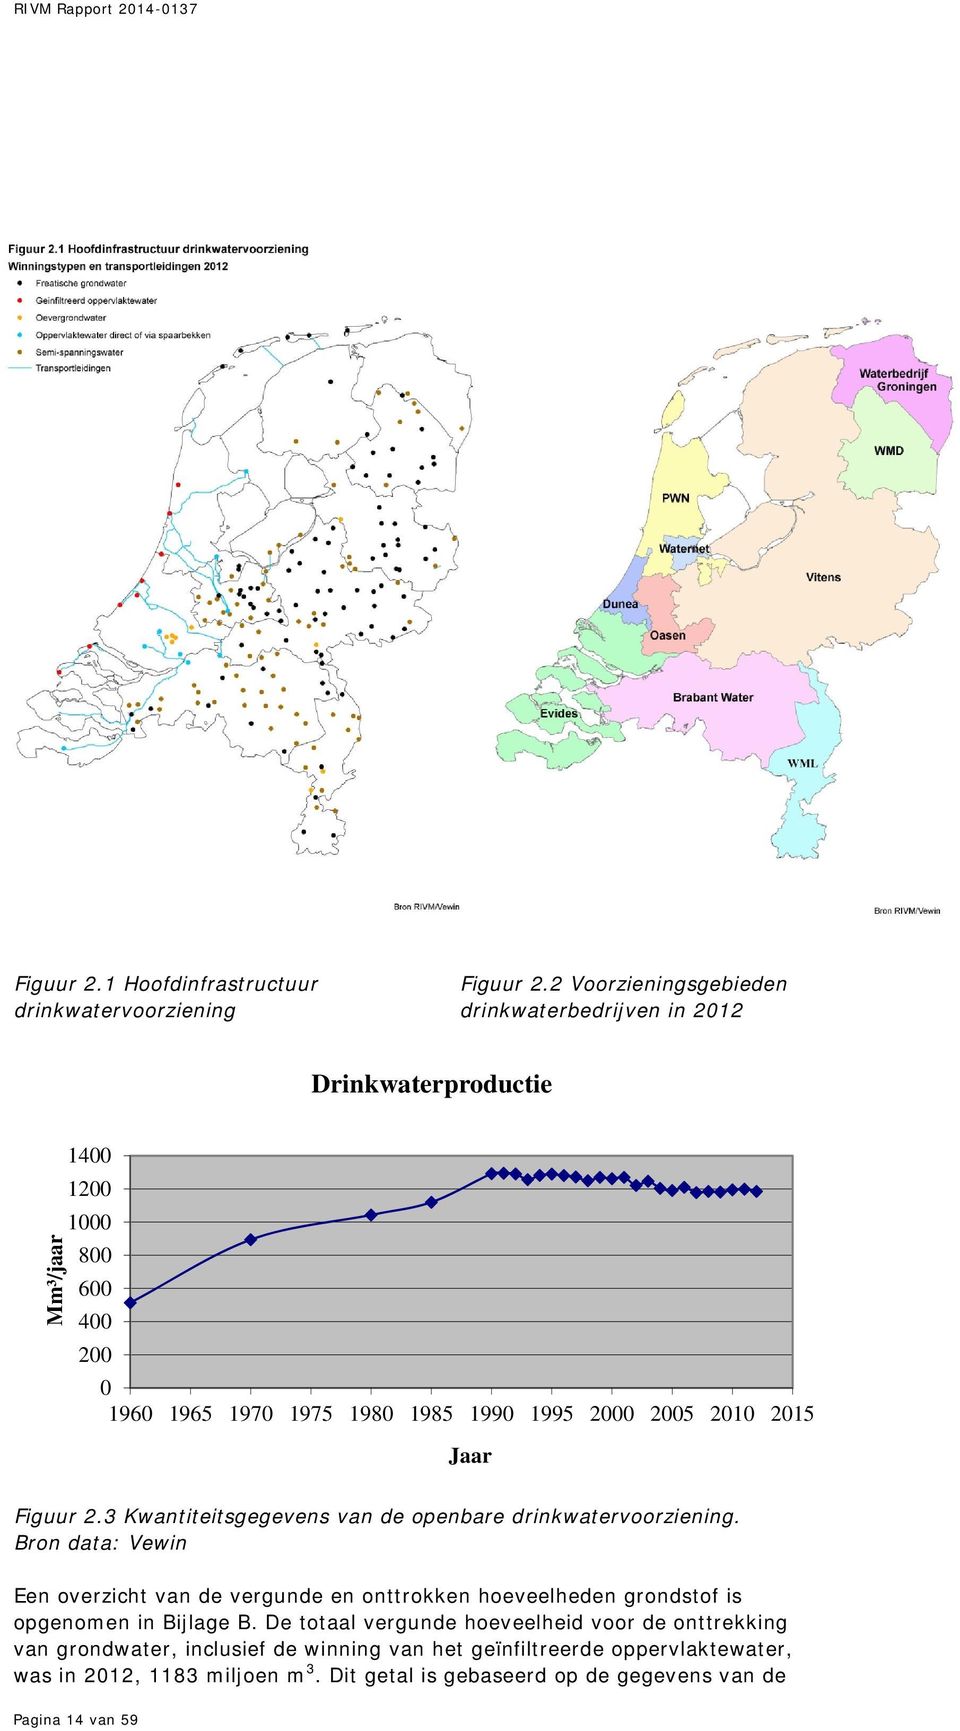 2005 2010 2015 Jaar Figuur 2.3 Kwantiteitsgegevens van de openbare drinkwatervoorziening.